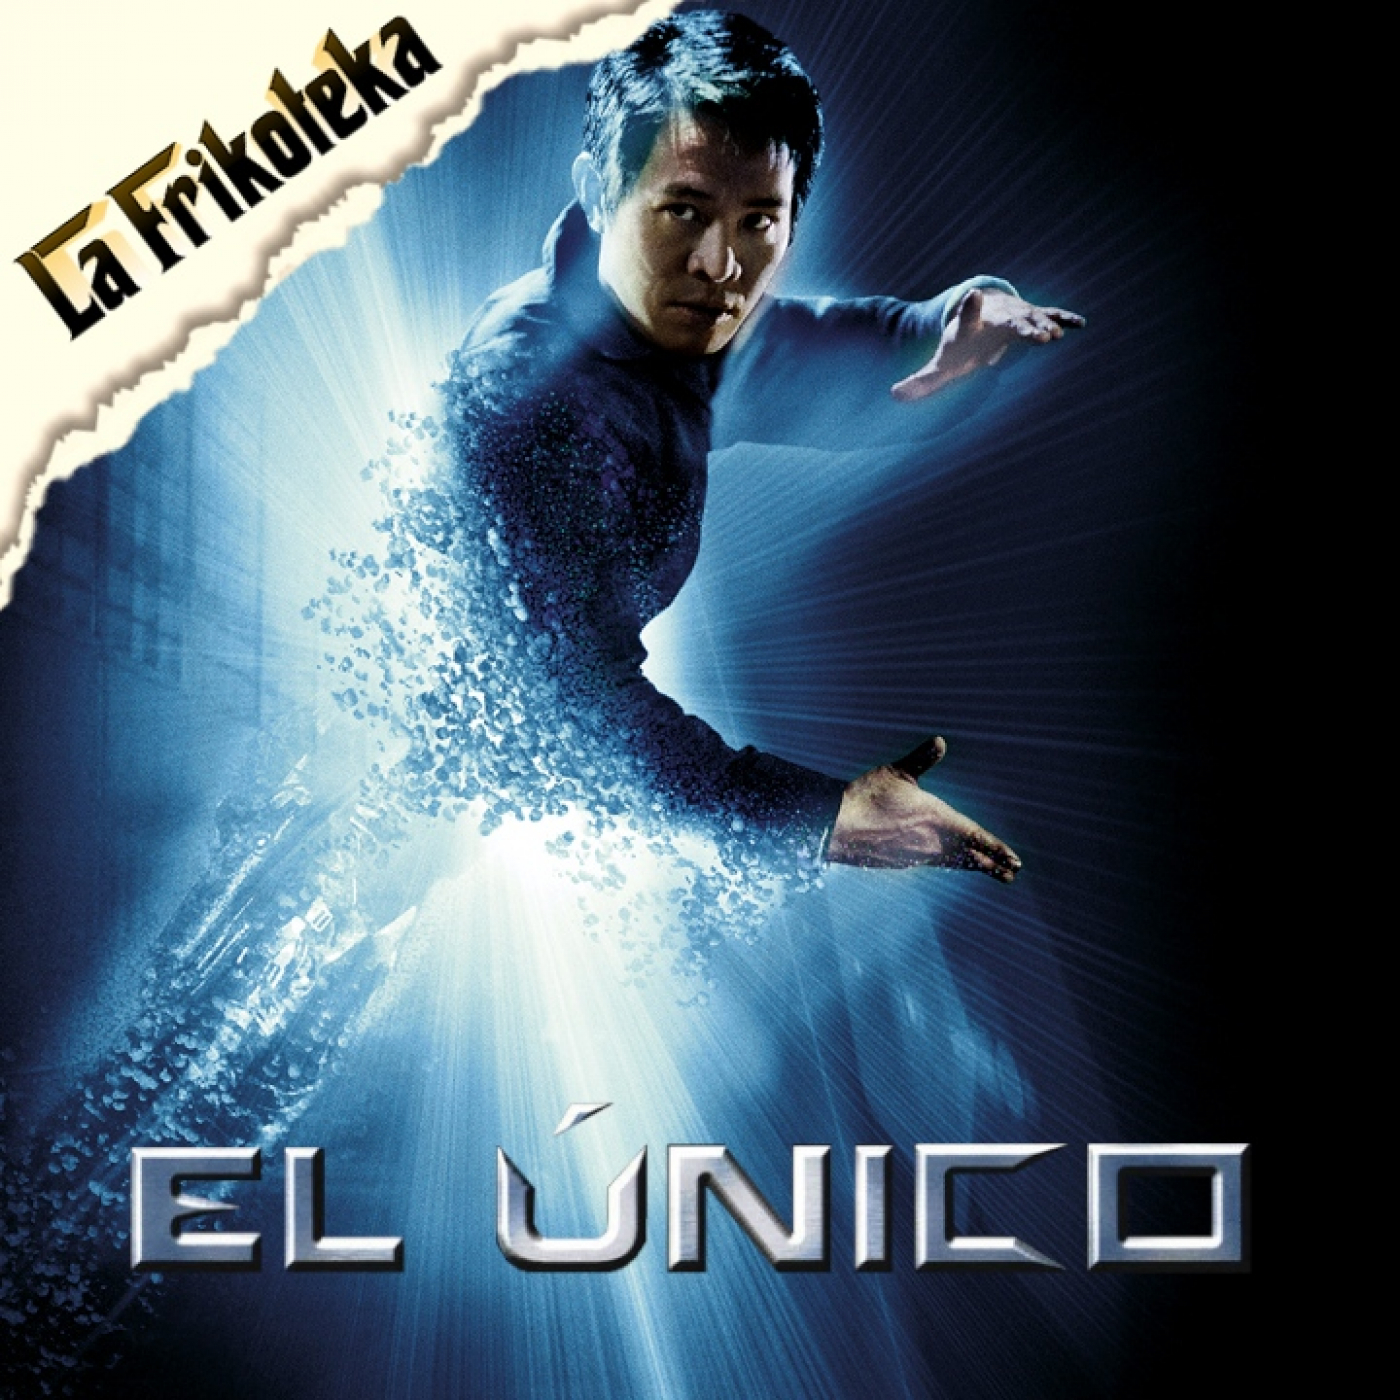 153 - El Unico (2001) - Episodio exclusivo para mecenas